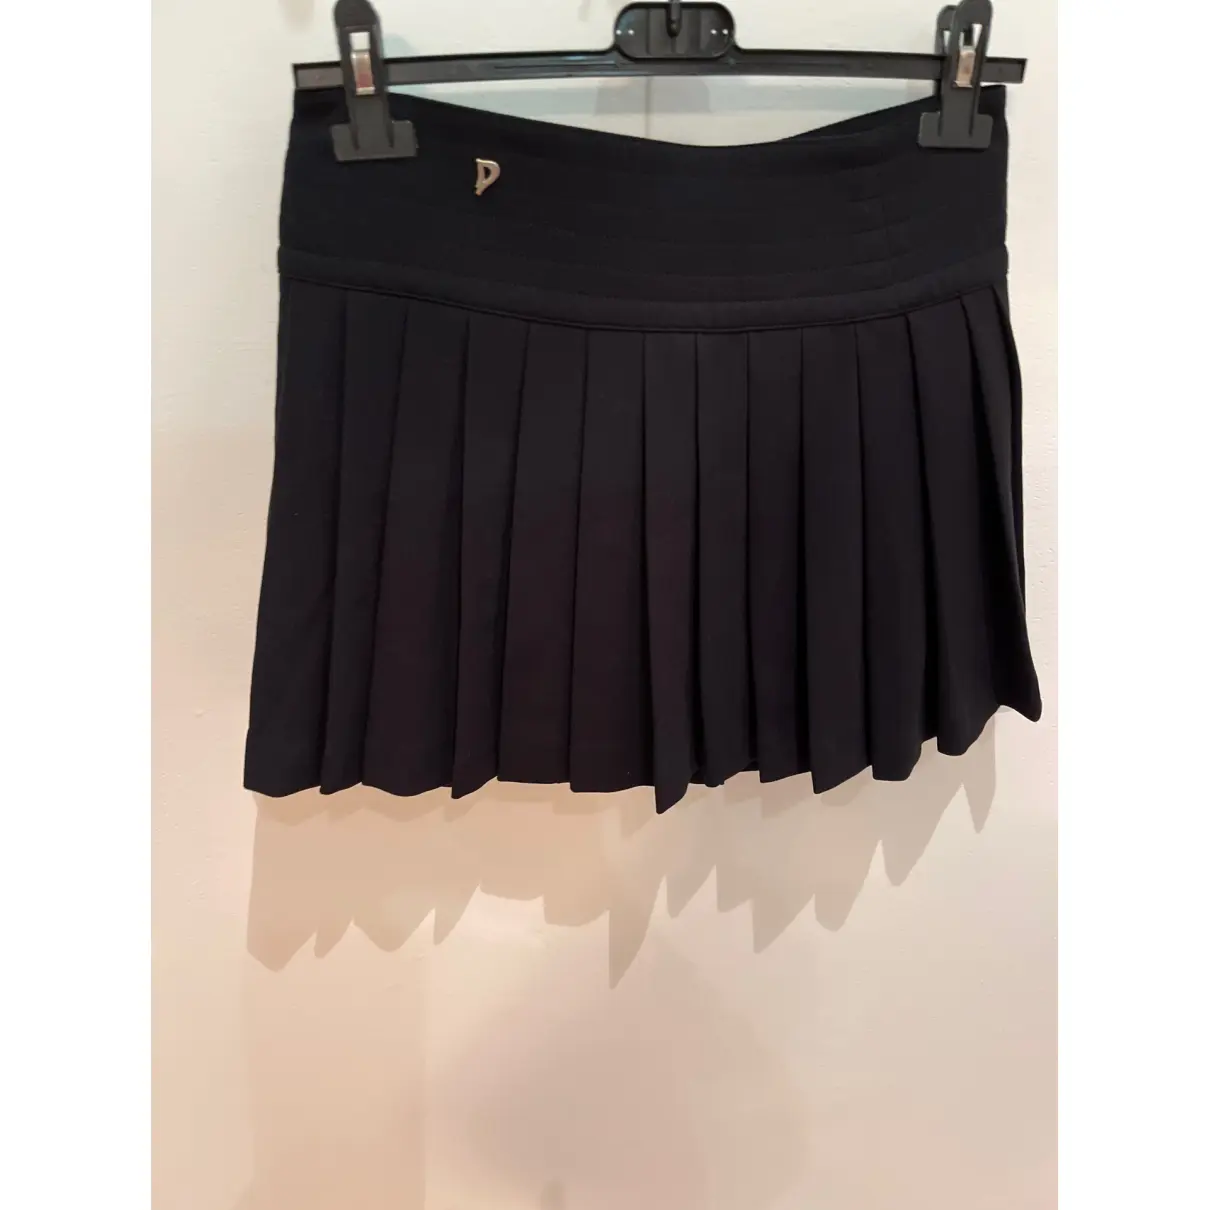 Buy Dondup Mini skirt online